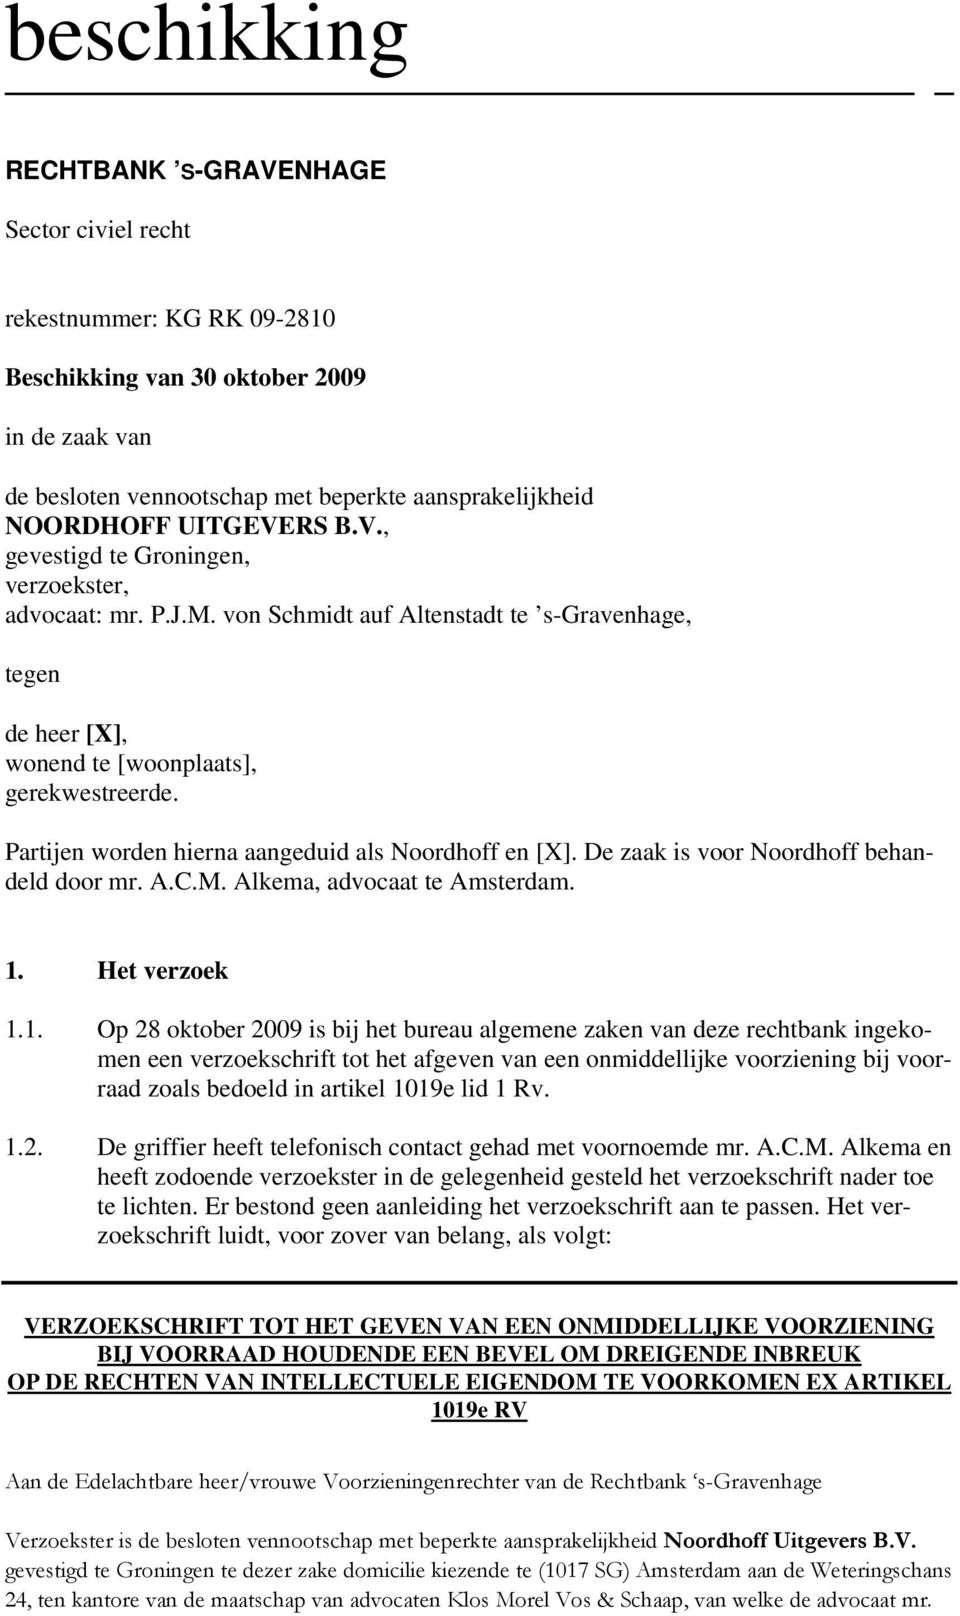 De zaak is voor Noordhoff behandeld door mr. A.C.M. Alkema, advocaat te Amsterdam. 1.